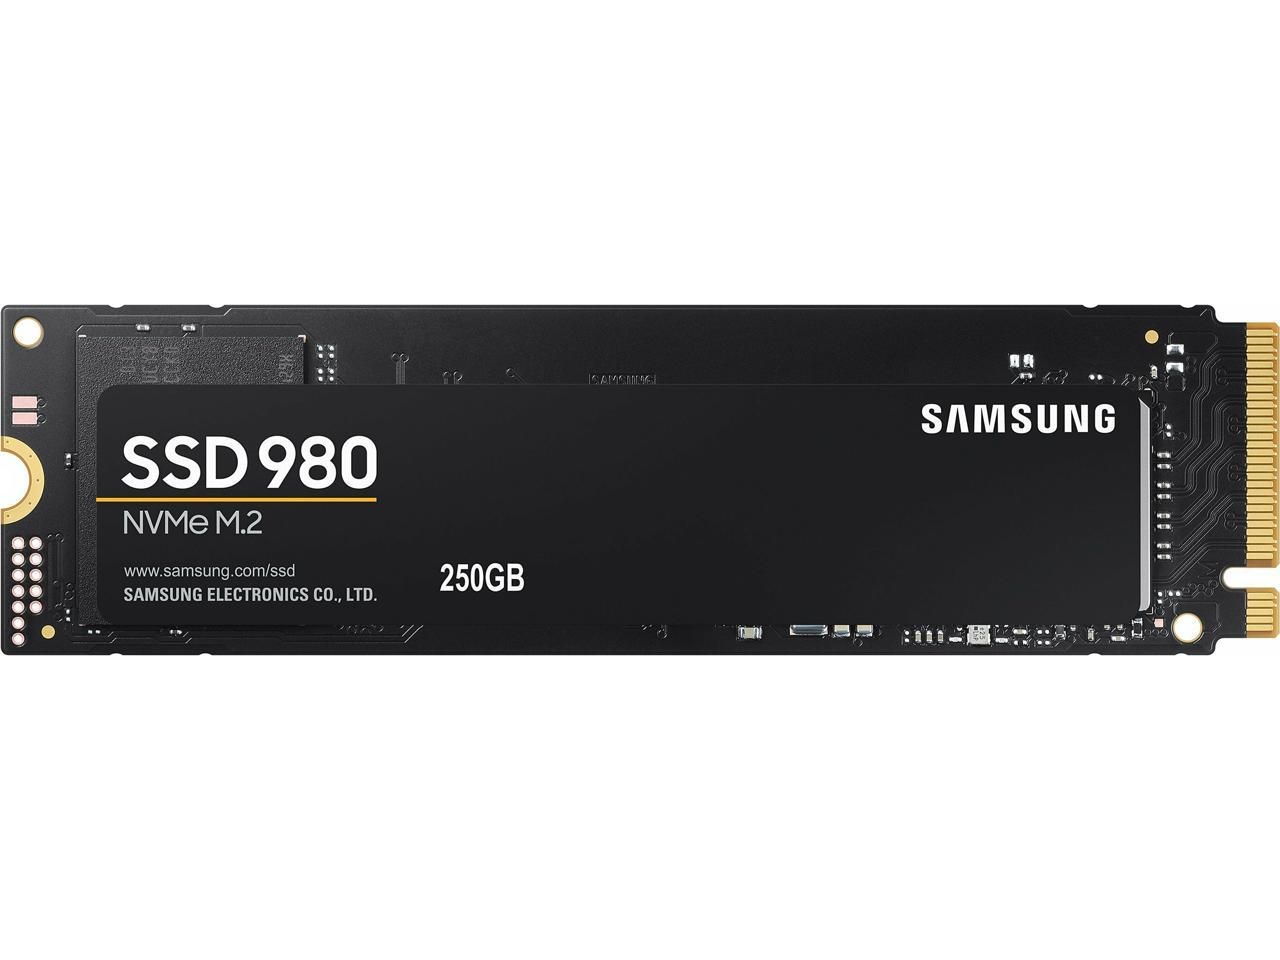 Ssd mz v8v1t0bw. Твердотельный накопитель SSD M.2 2280 500gb Samsung 980 [MZ-v8v500bw] (r3100/w2600mb/s)_CN. Solid State Drive 980. MZ-v8v1t0bw. SSD Озон.